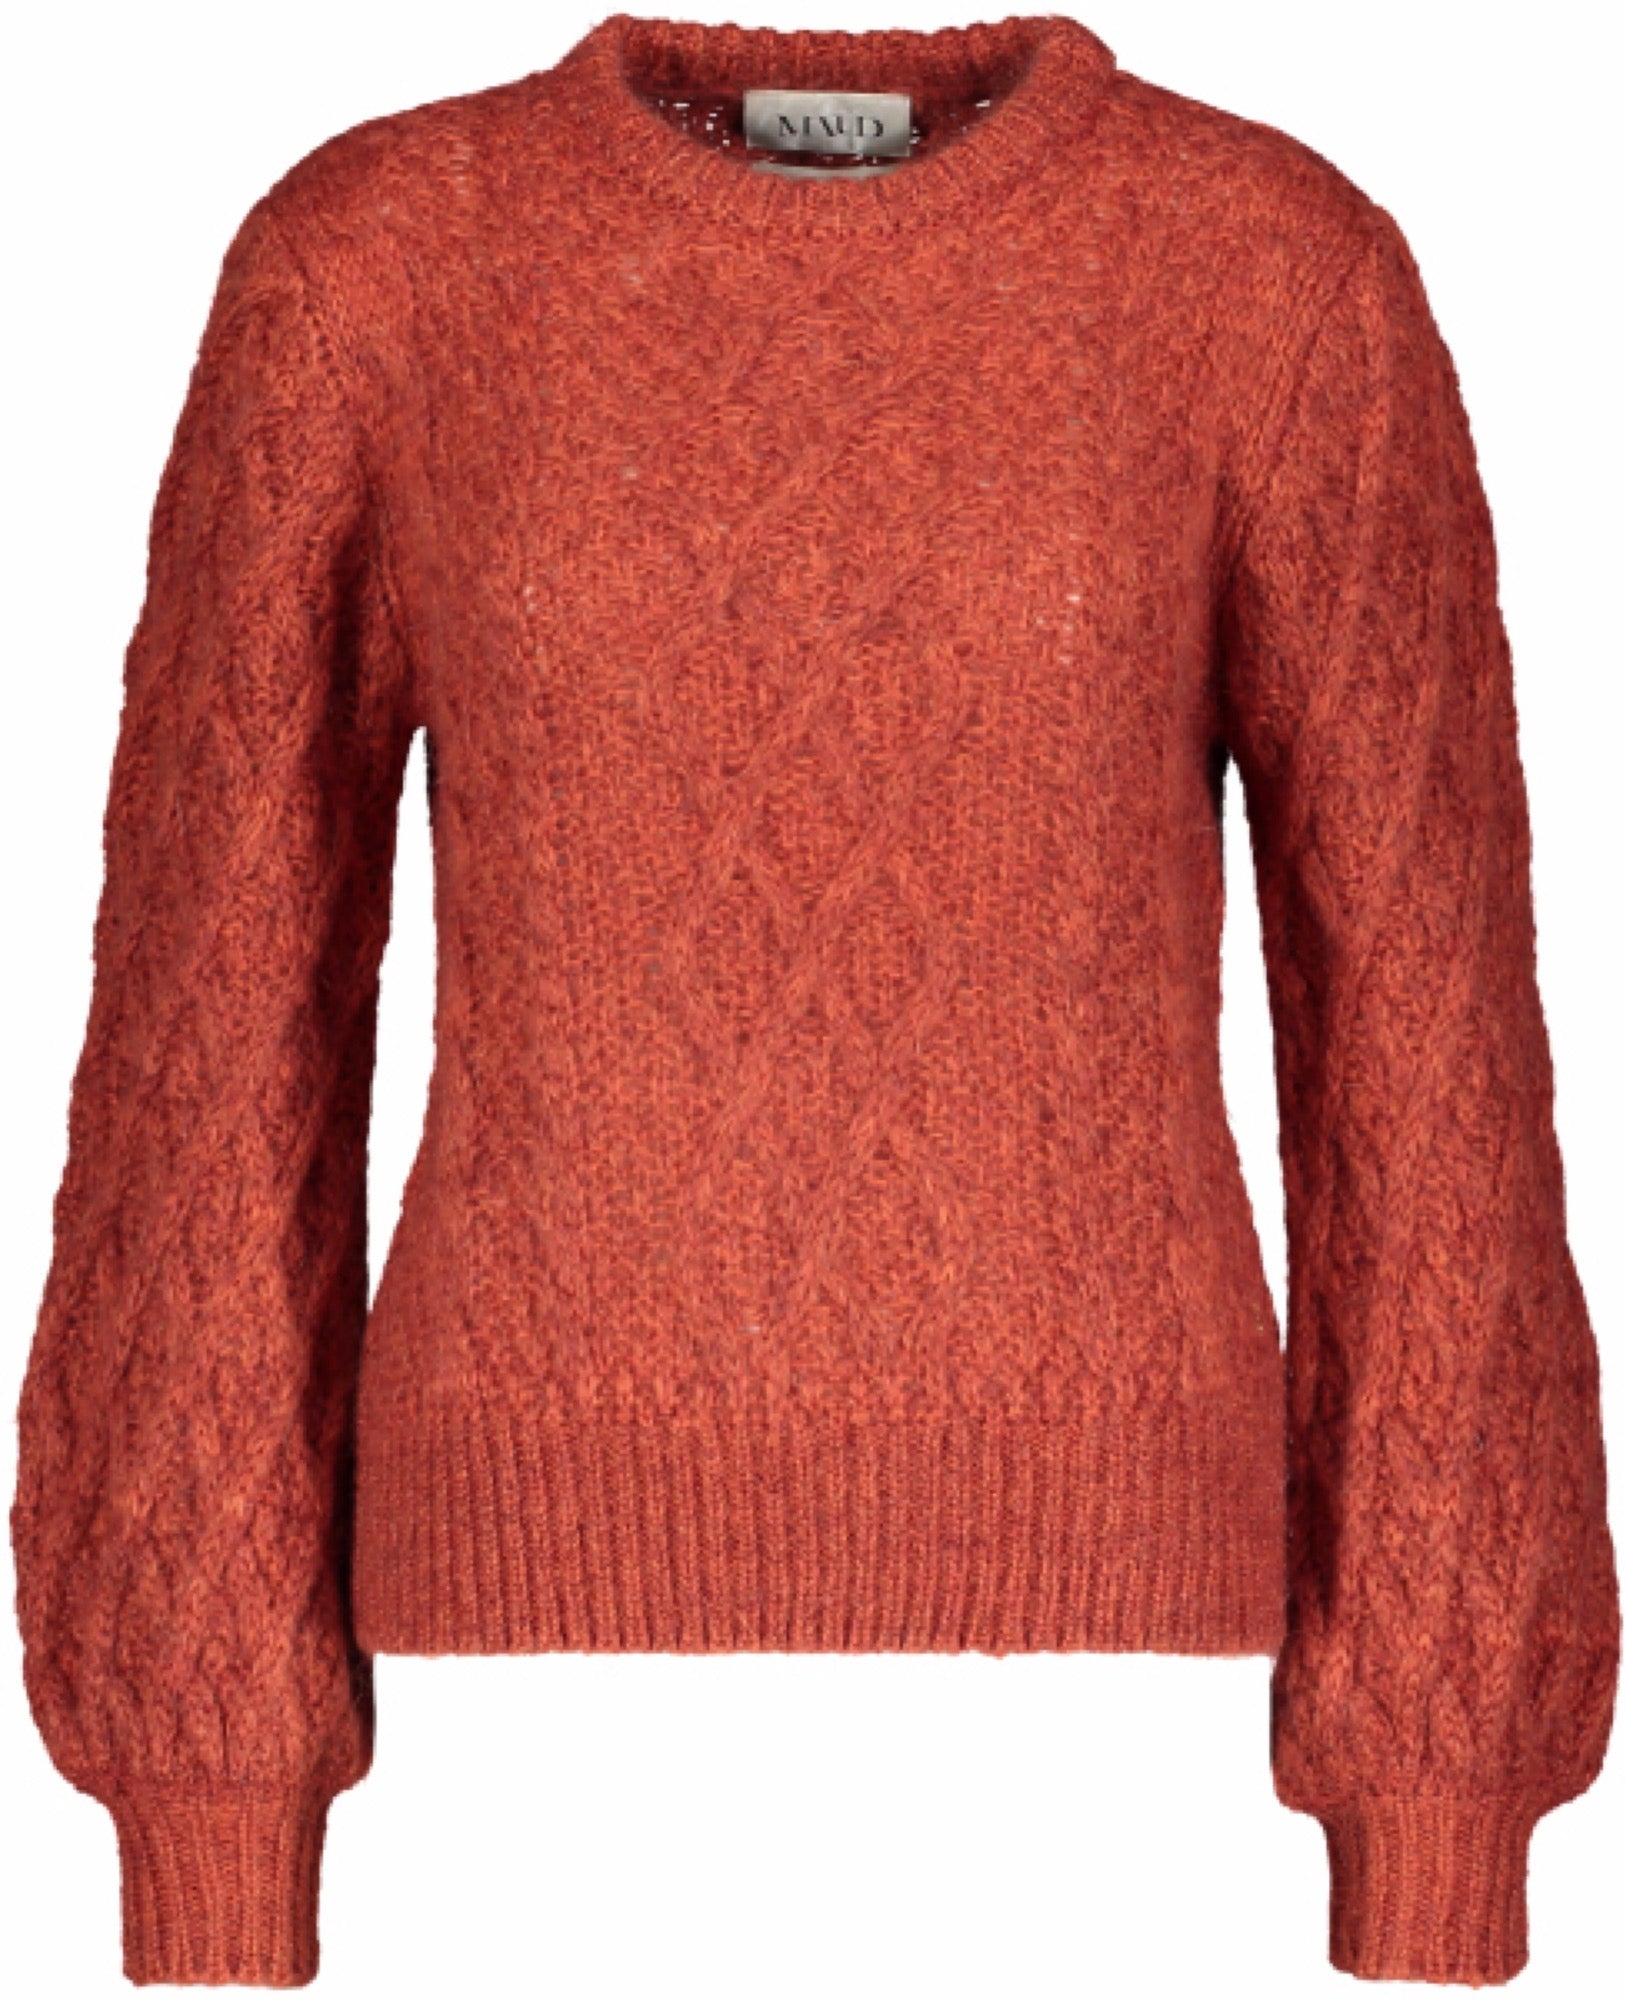 Multicolored Knit - Rust - MAUD - Gensere - VILLOID.no